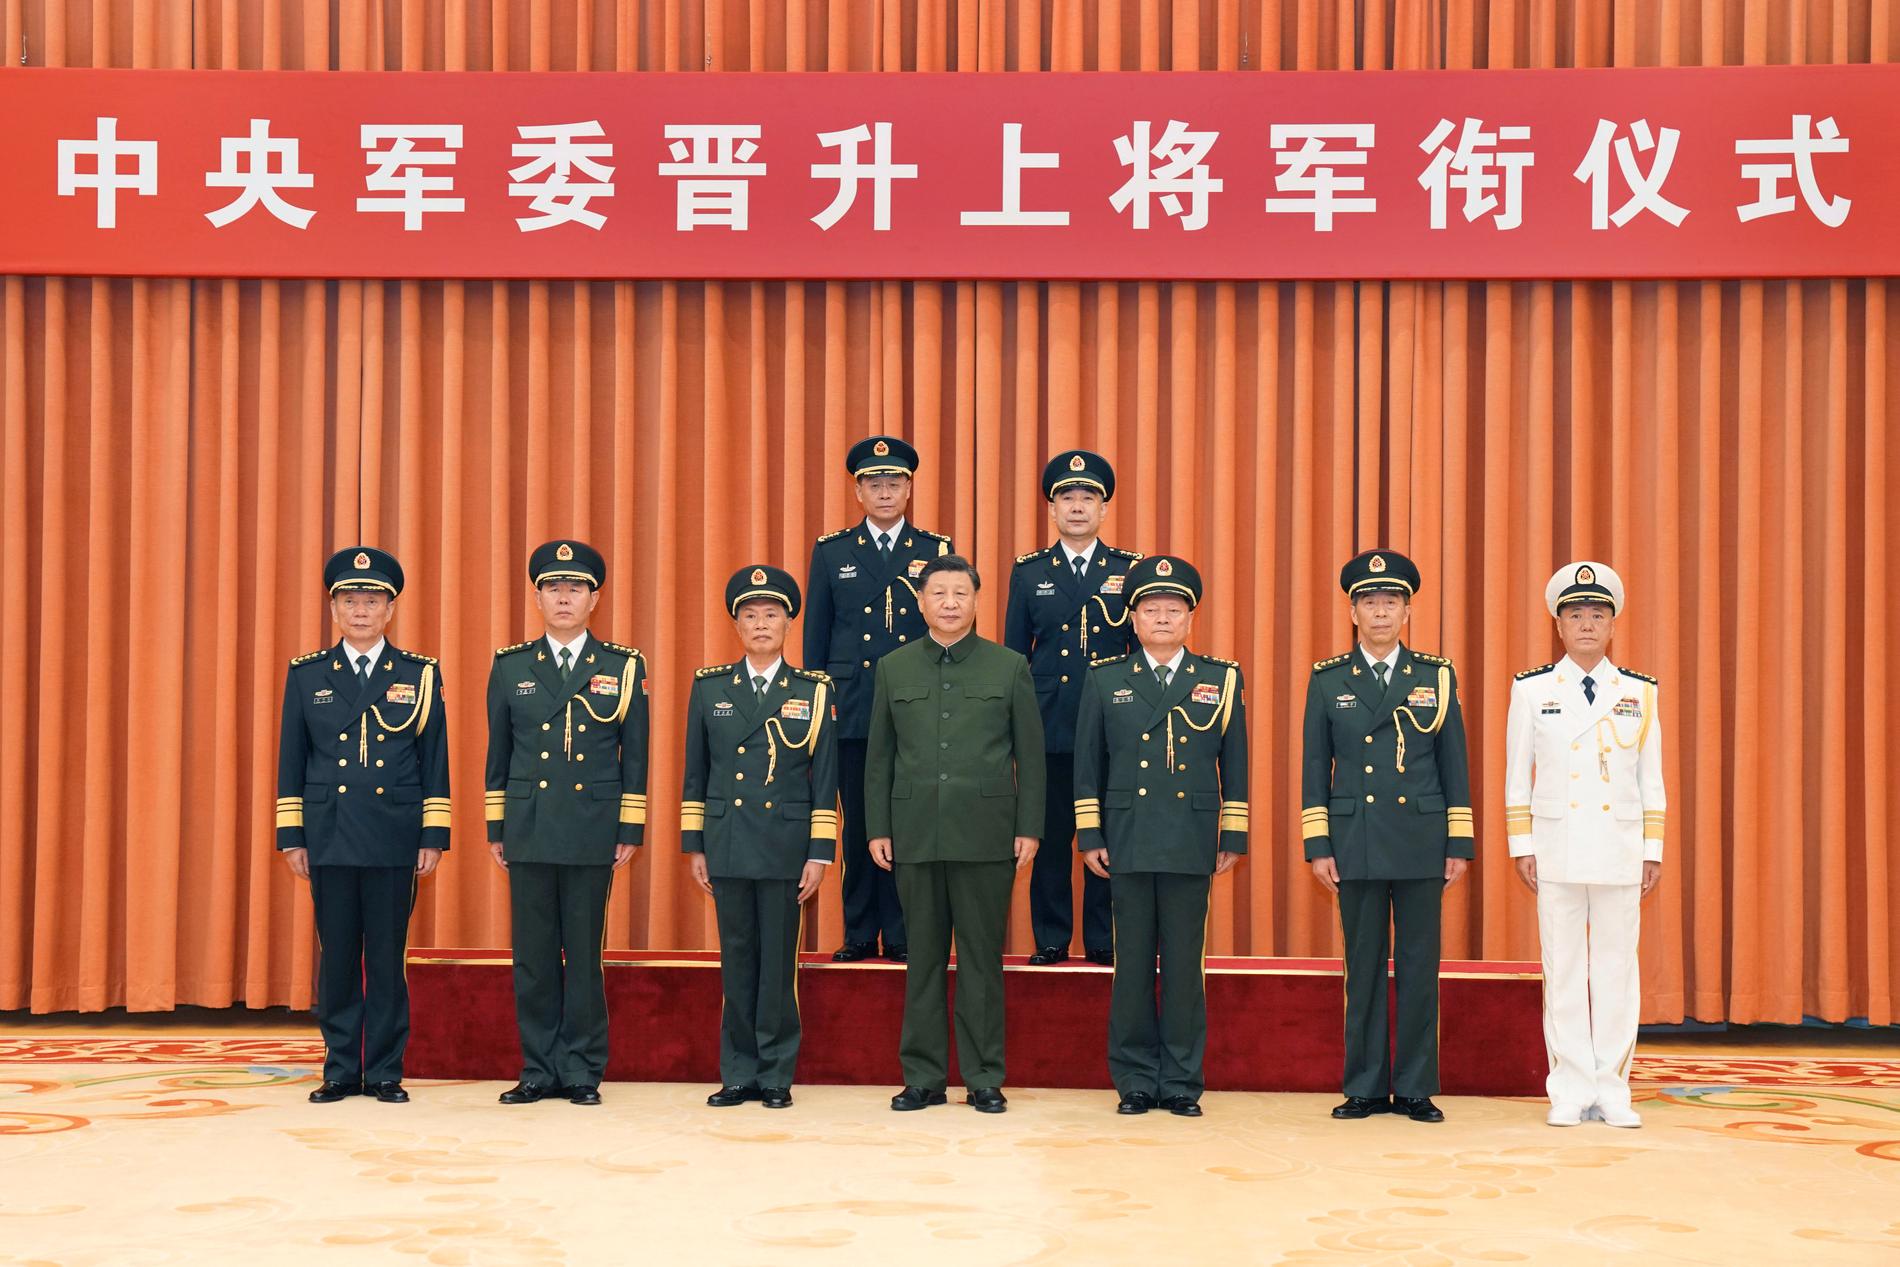 President Xi Jinping poserar tillsammans med höjdare inom den kinesiska militären.